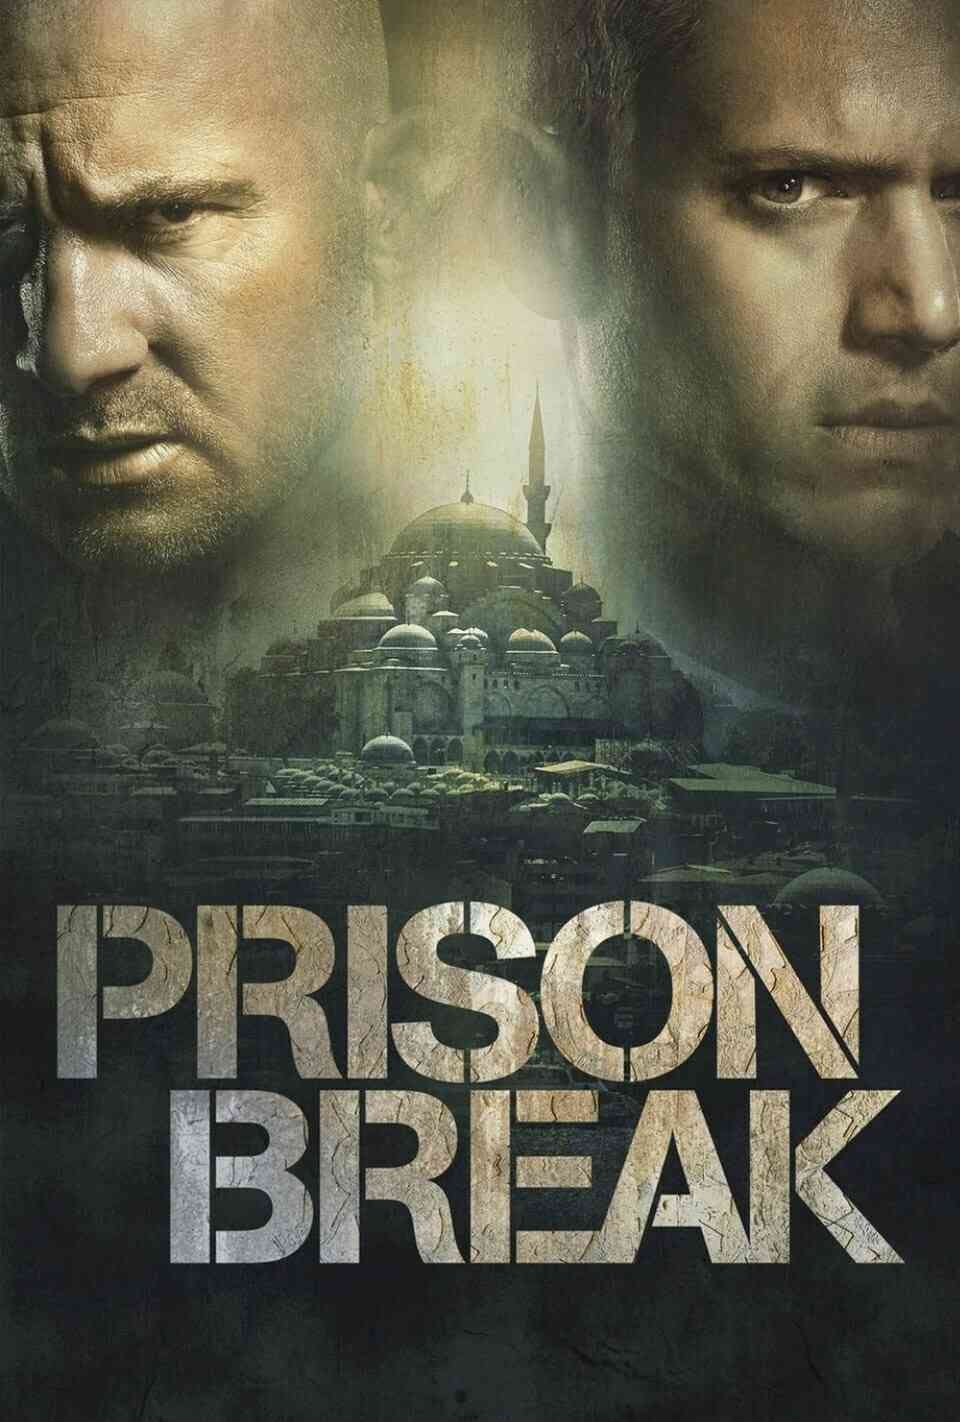 Read Prison Break screenplay (poster)